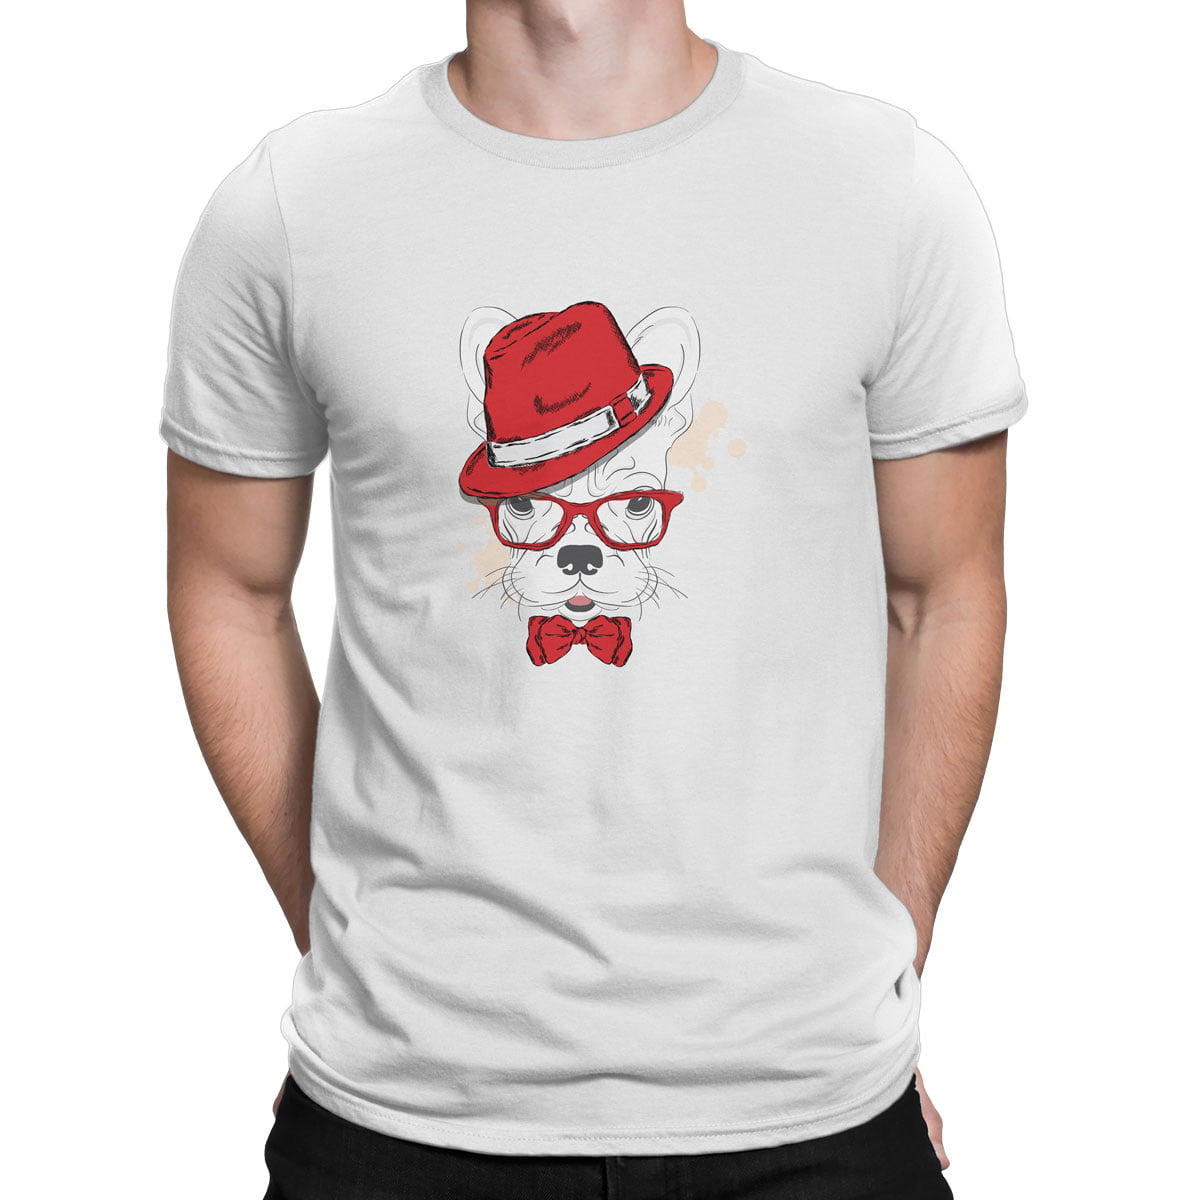 Yasli gozluklu yakisikli kopek erkek tisort b - fötr şapkalı köpek baskılı erkek t-shirt - figurex